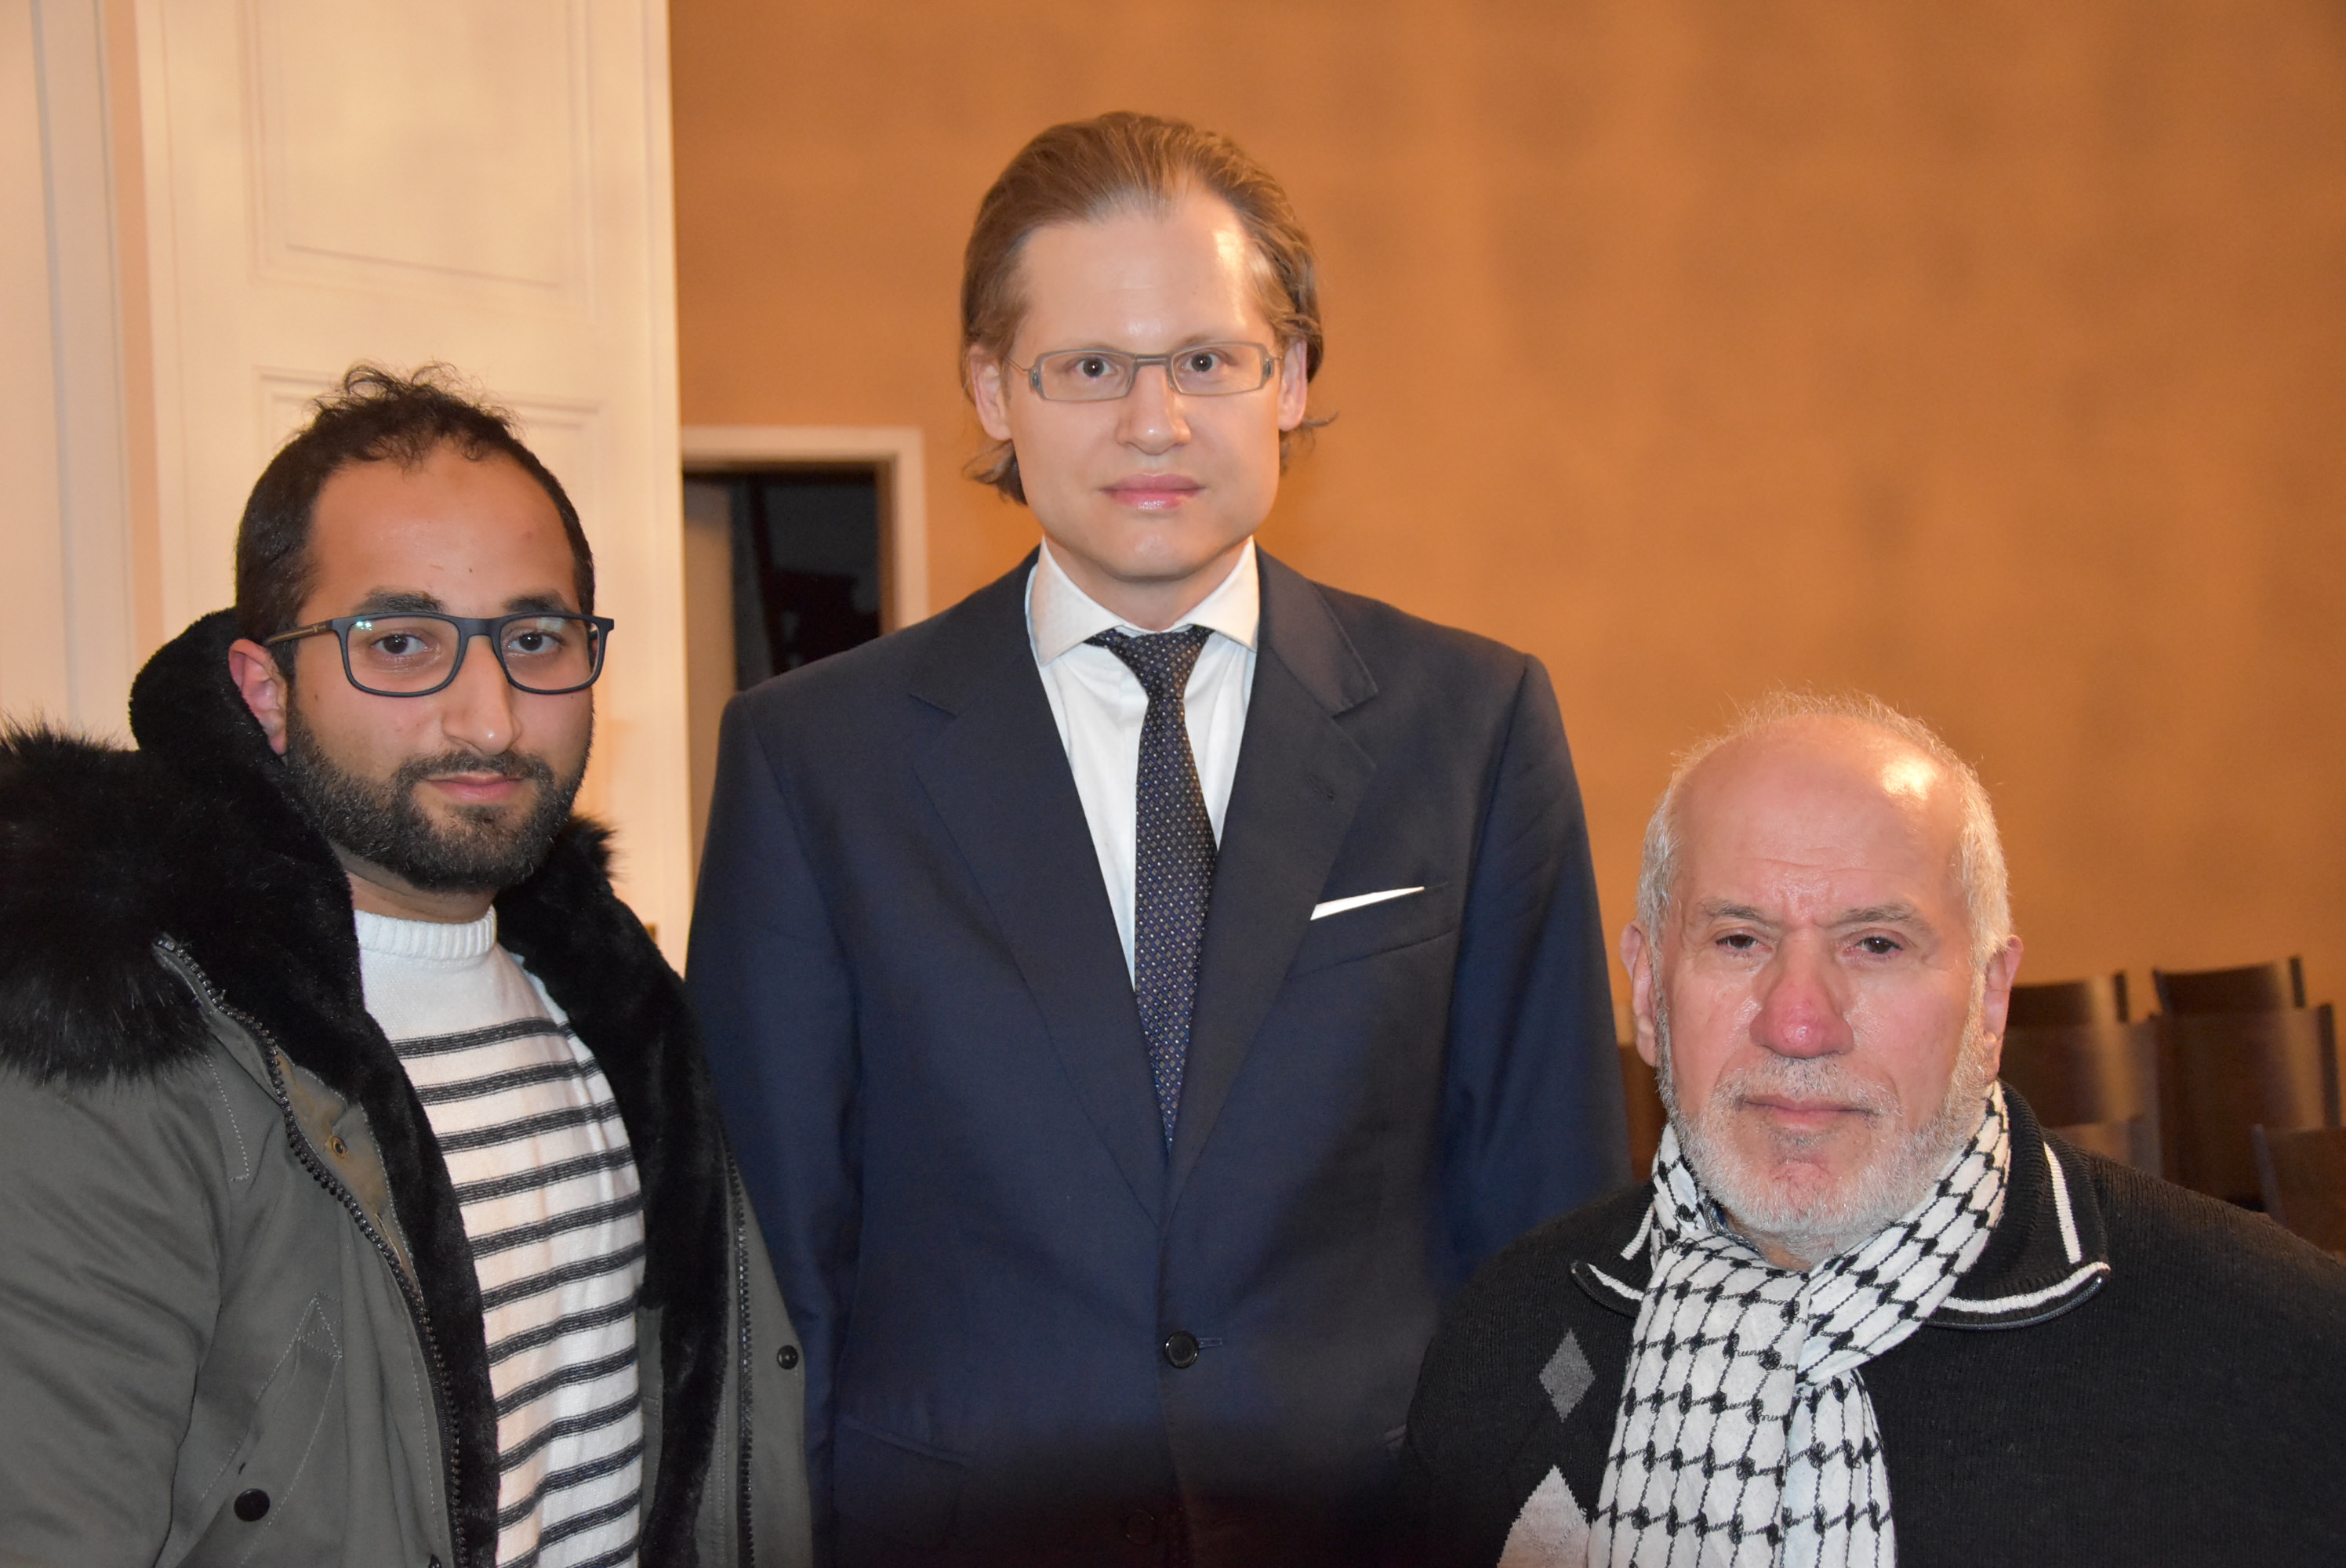 اتحاد الأطباء والصيادلة في ألمانيا يحيي يوم التضامن العالمي مع الشعب الفلسطيني في سفارة فلسطين بألمانيا